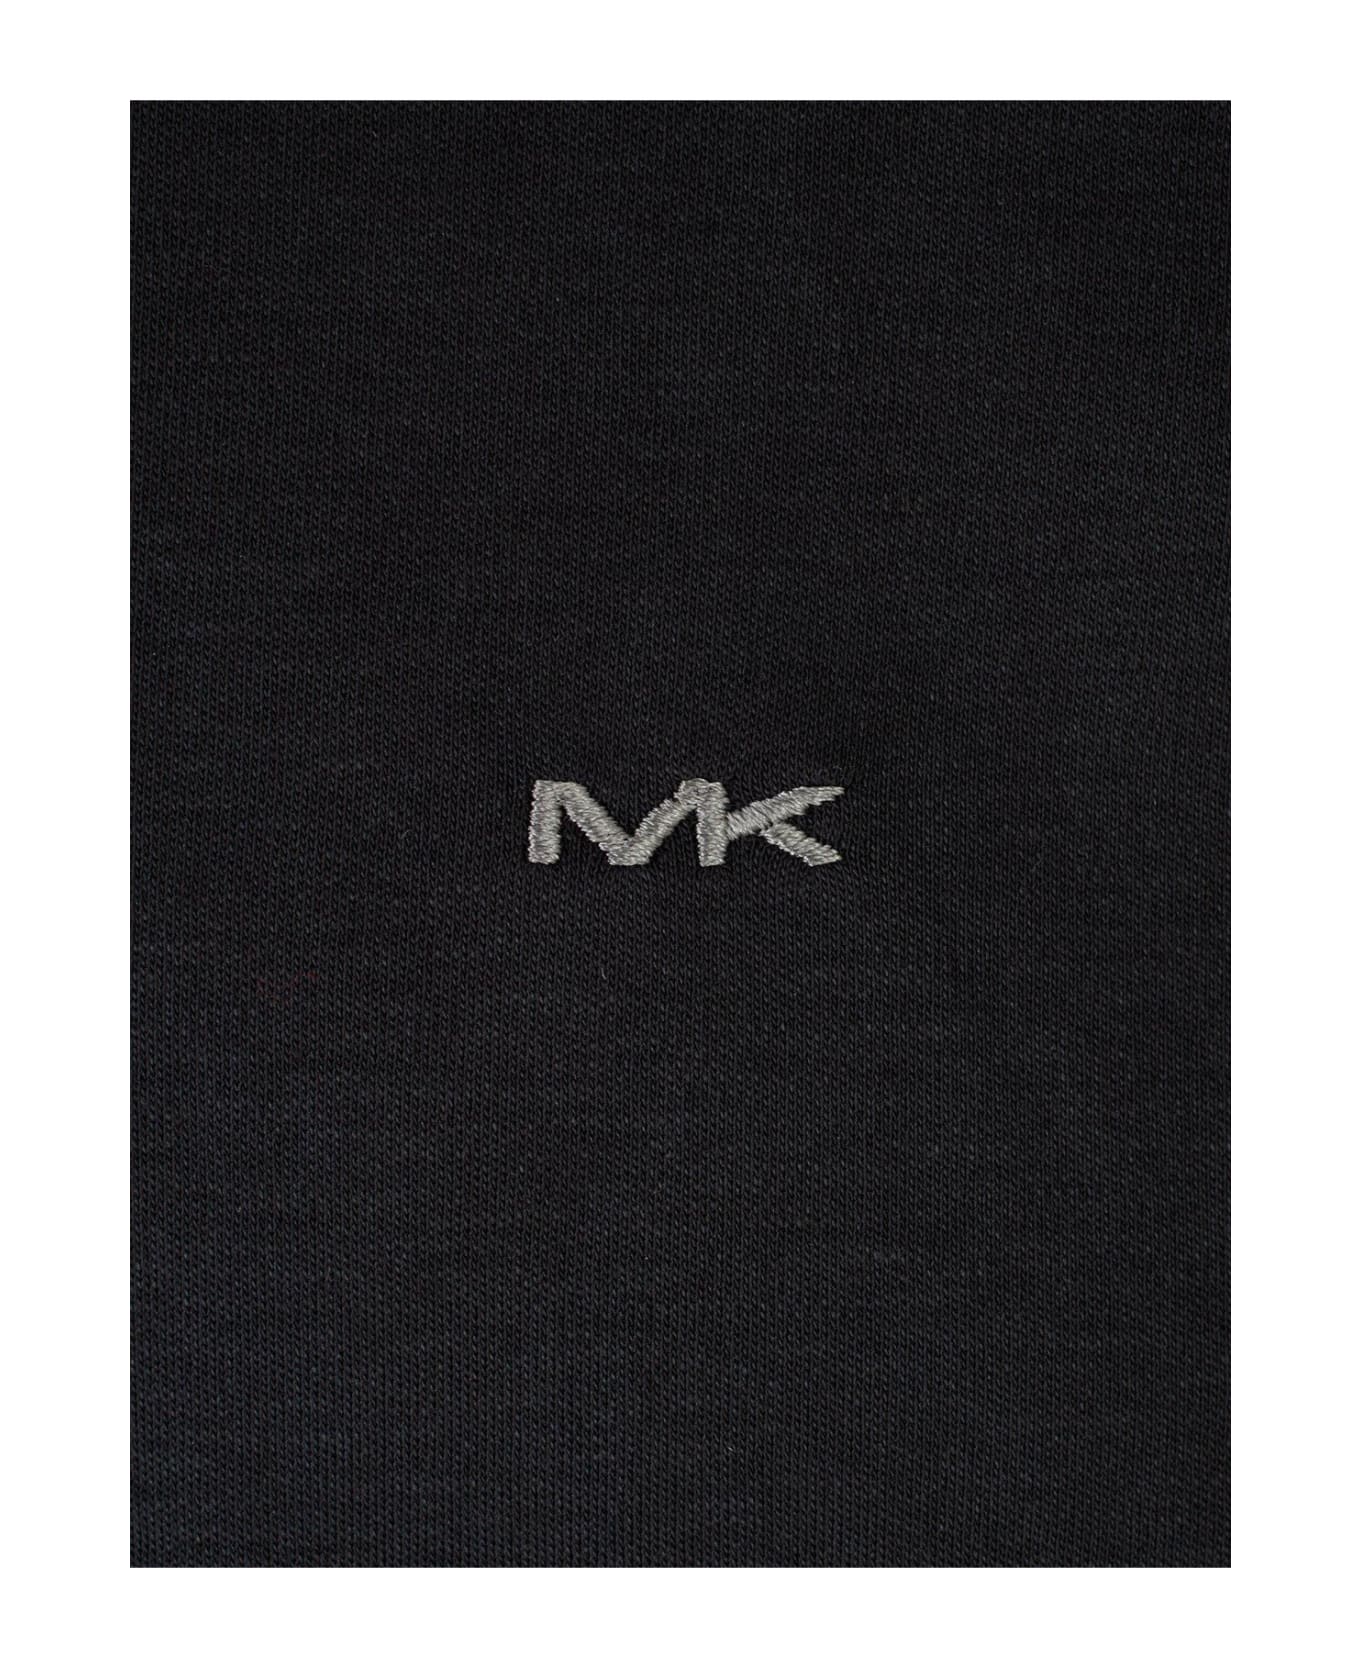 Michael Kors Long Sleeves Sleek Mk Polo - Black